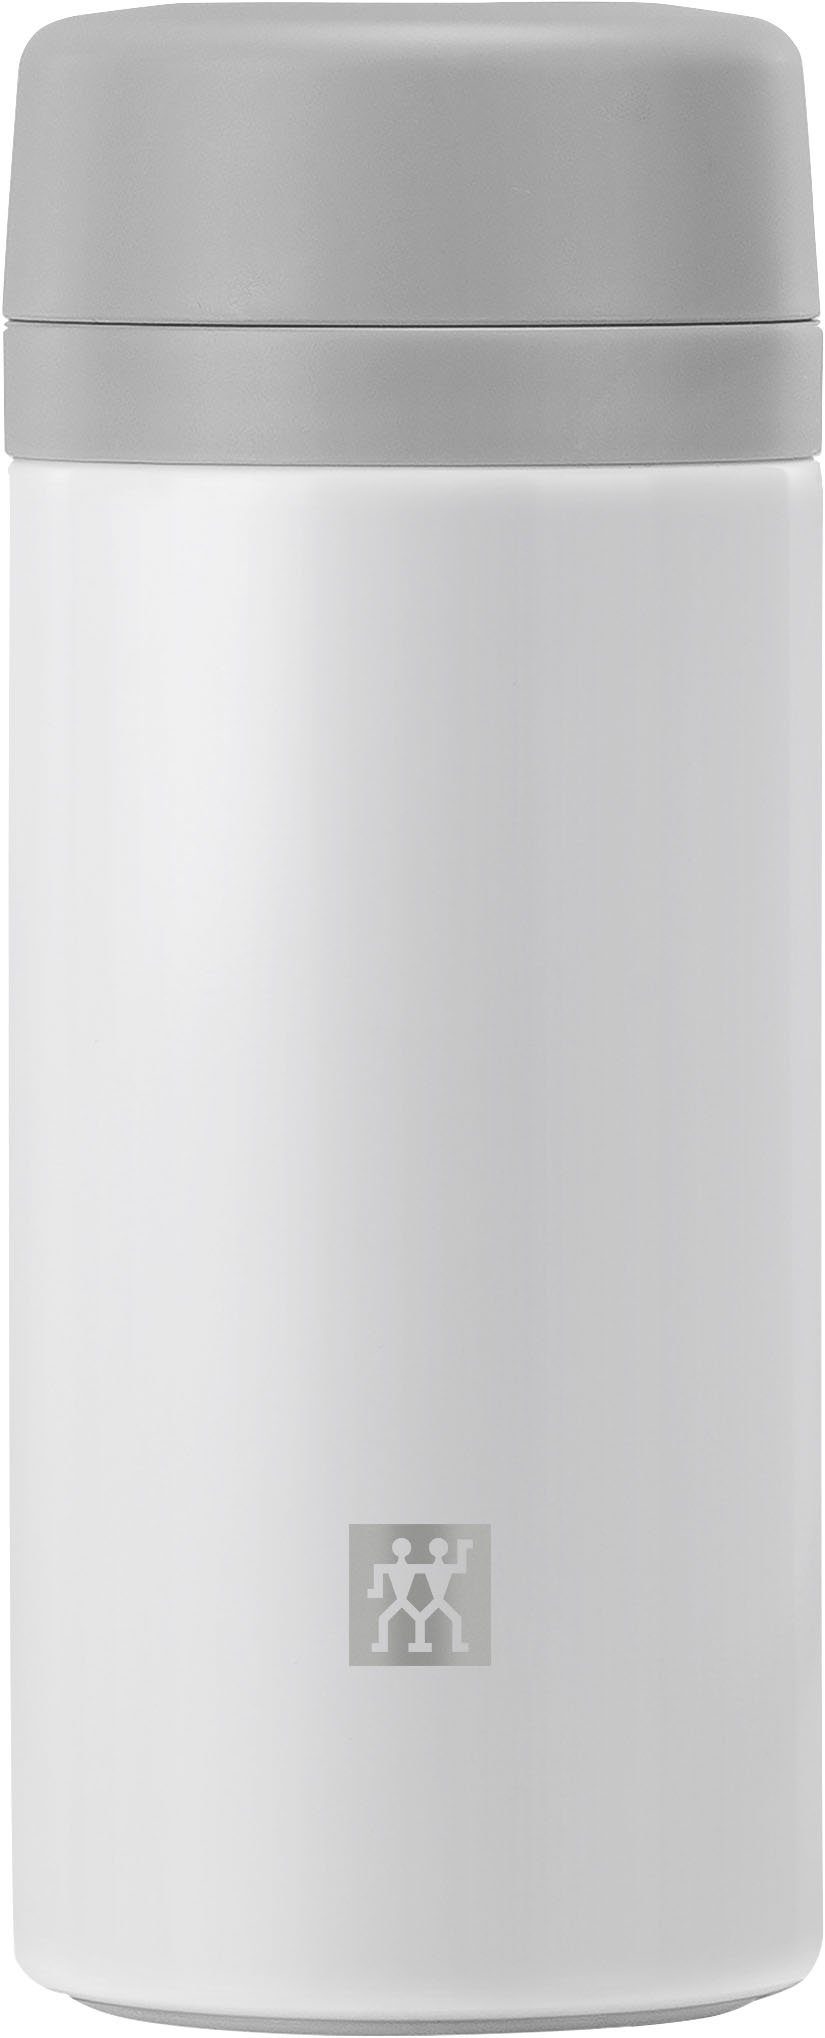 Zwilling Thermoflasche THERMO, ideale Isolierflasche für frische, gesunde Getränke unterwegs, 420 ml